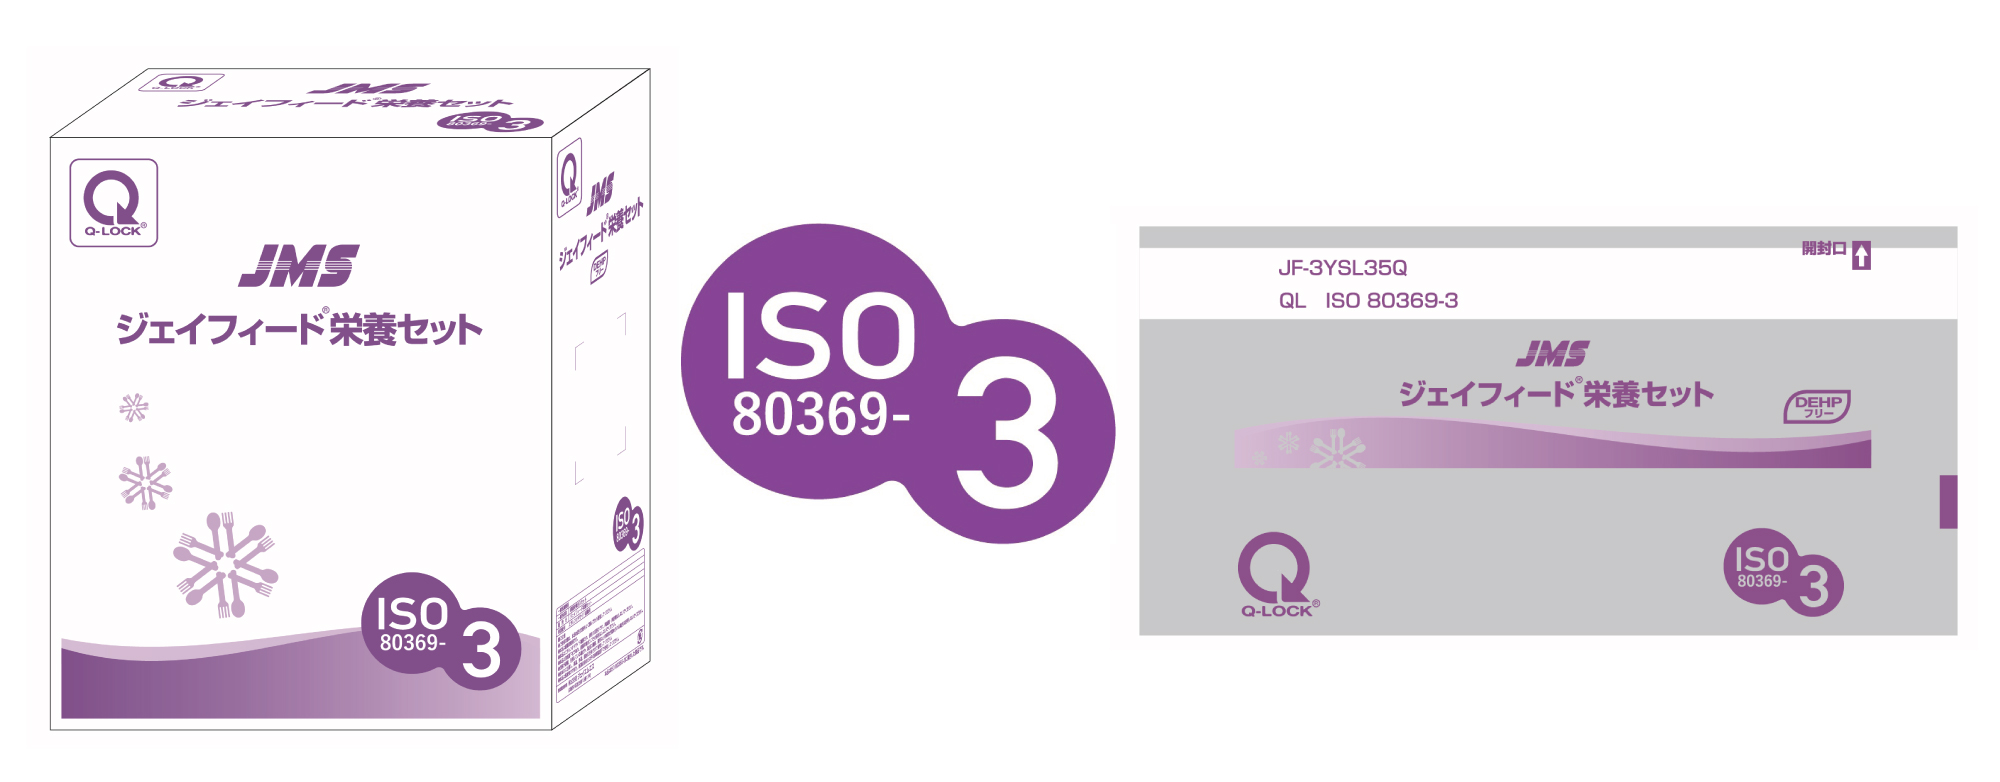 ISO 80369-3に適合した製品の包装にロゴマークを表示